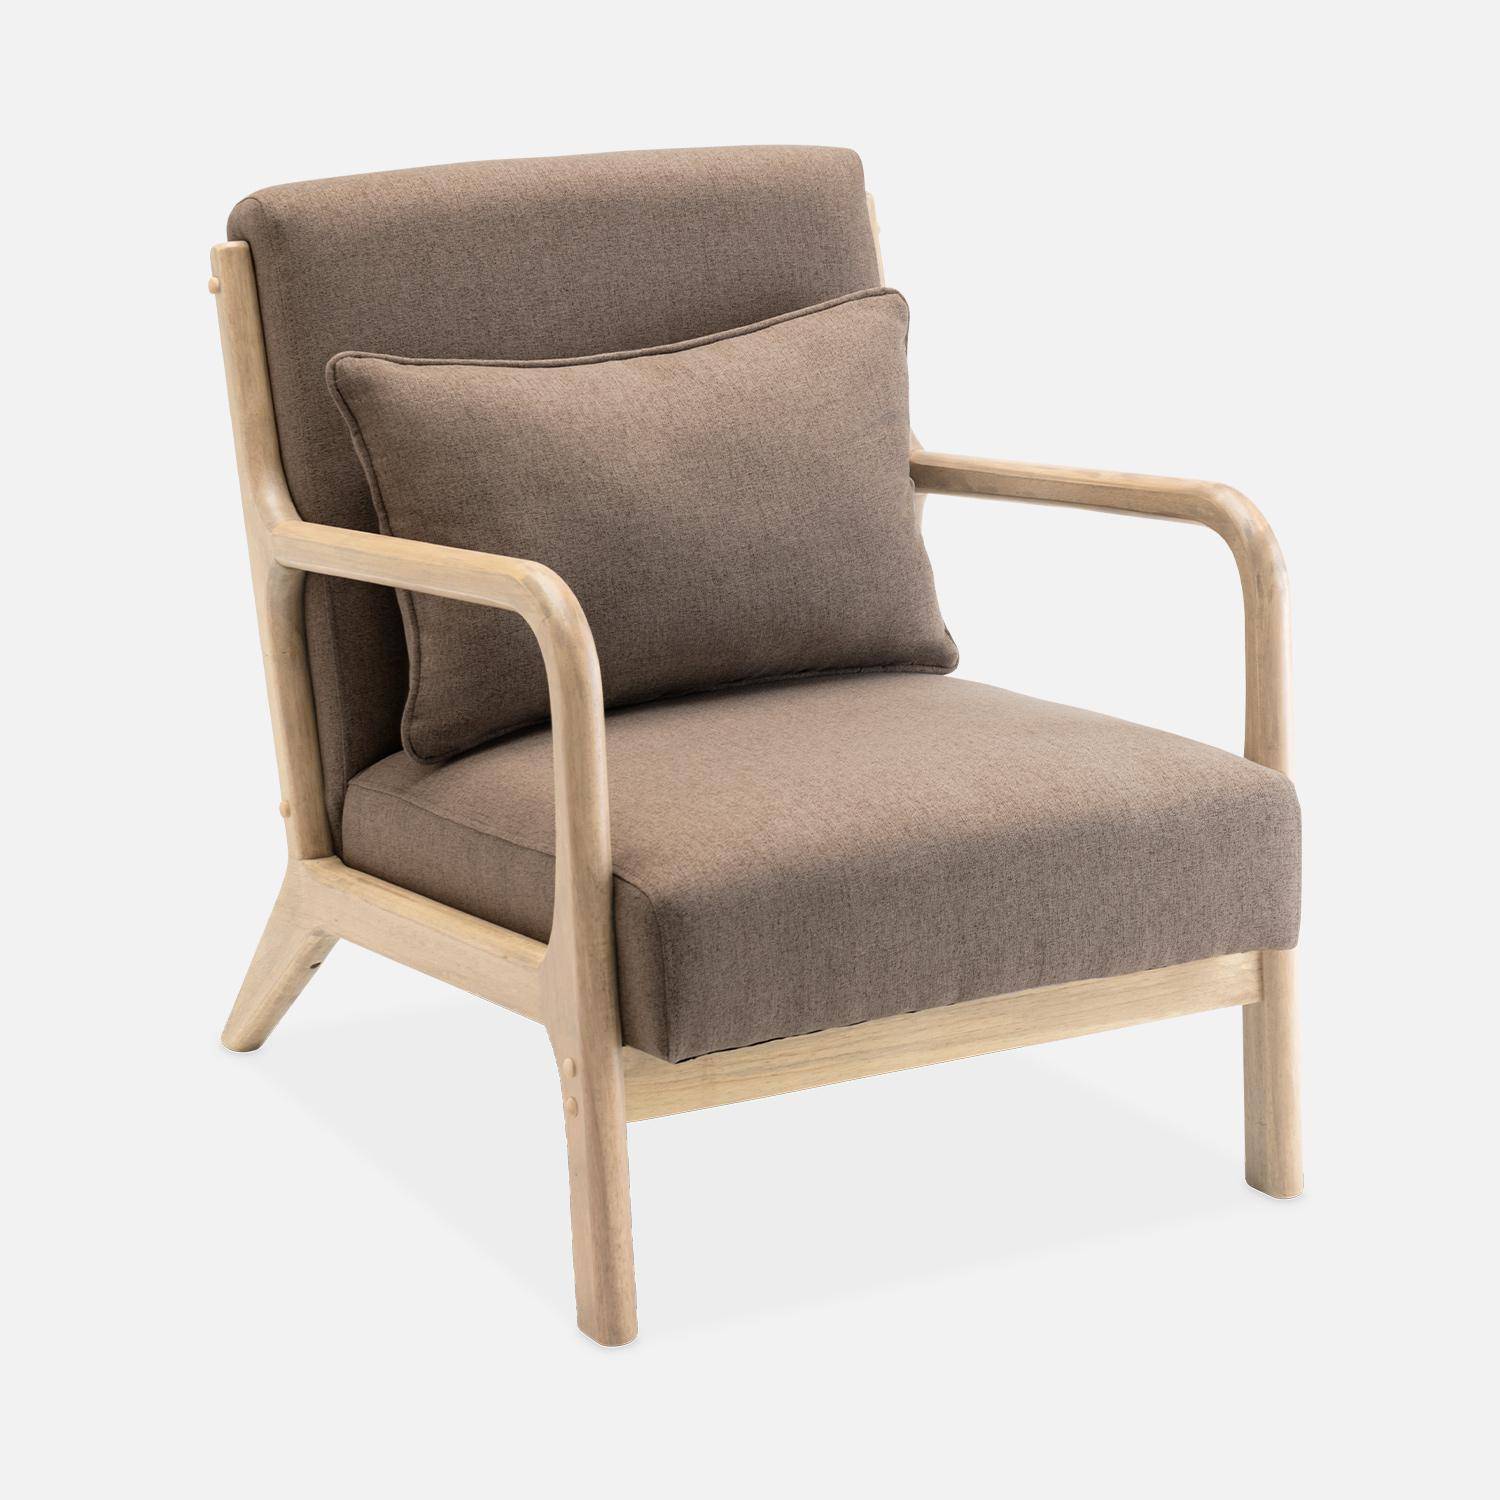 Sillón de diseño marrón en madera y tela, 1 asiento recto fijo, patas de compás escandinavas, armazón de madera maciza, asiento cómodo Photo4